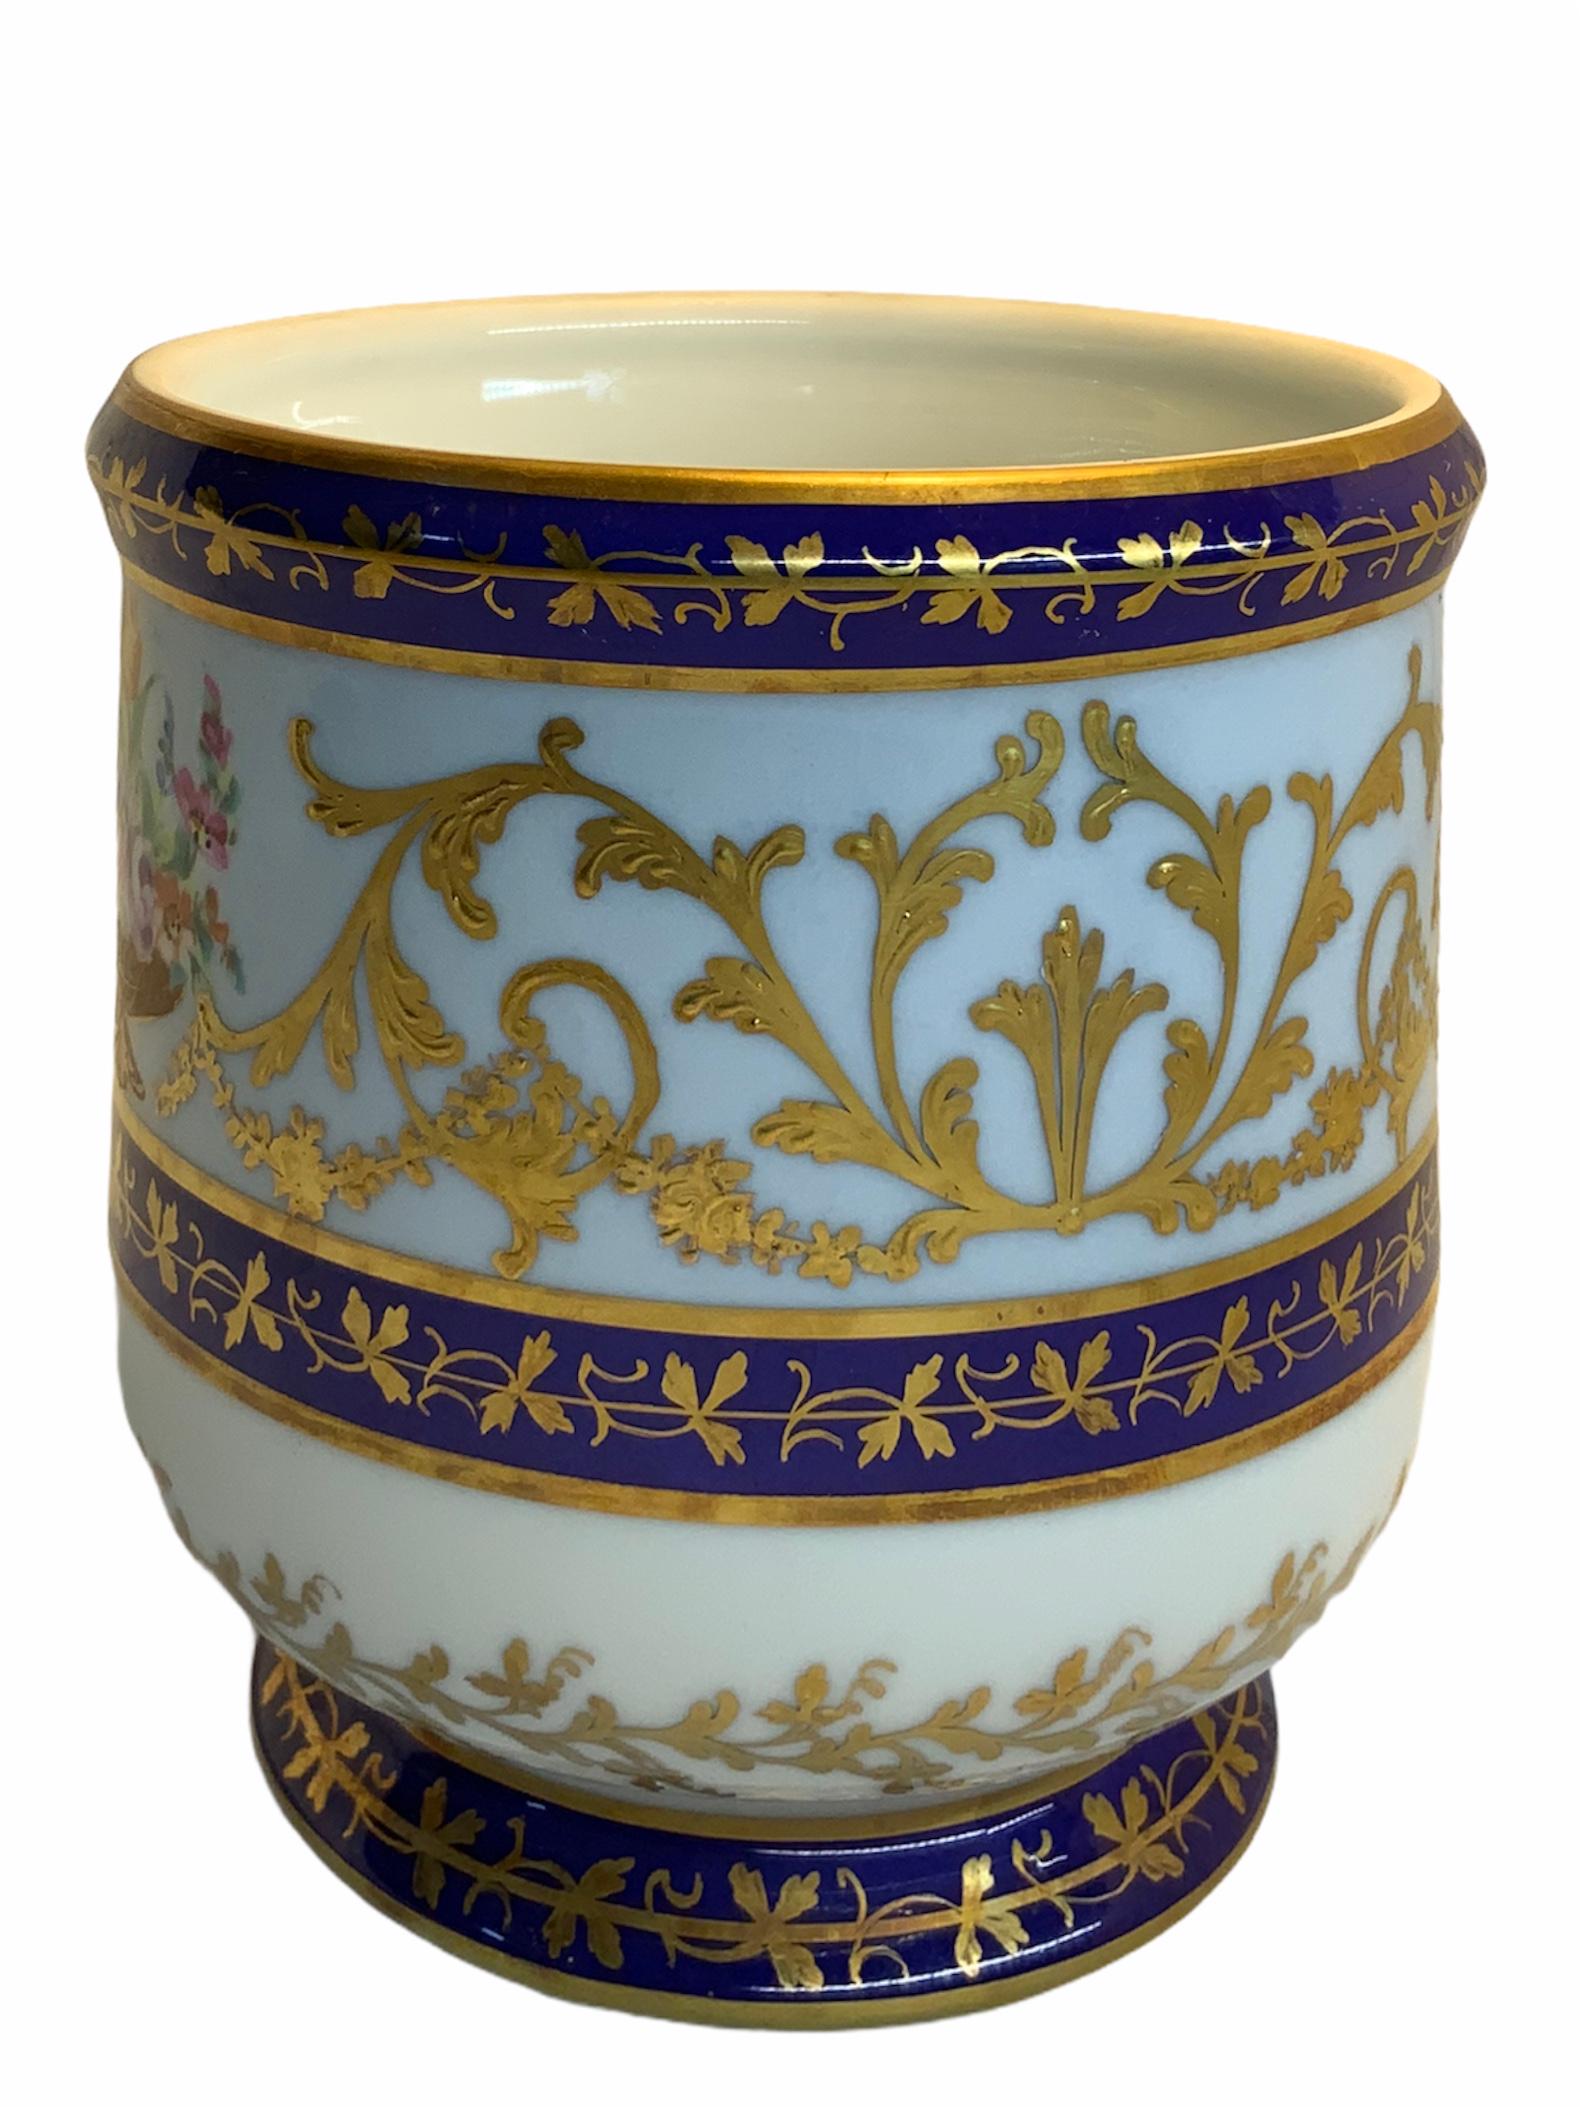 Camille Le Tallec Porcelain Petite Cachepot/Vase 2